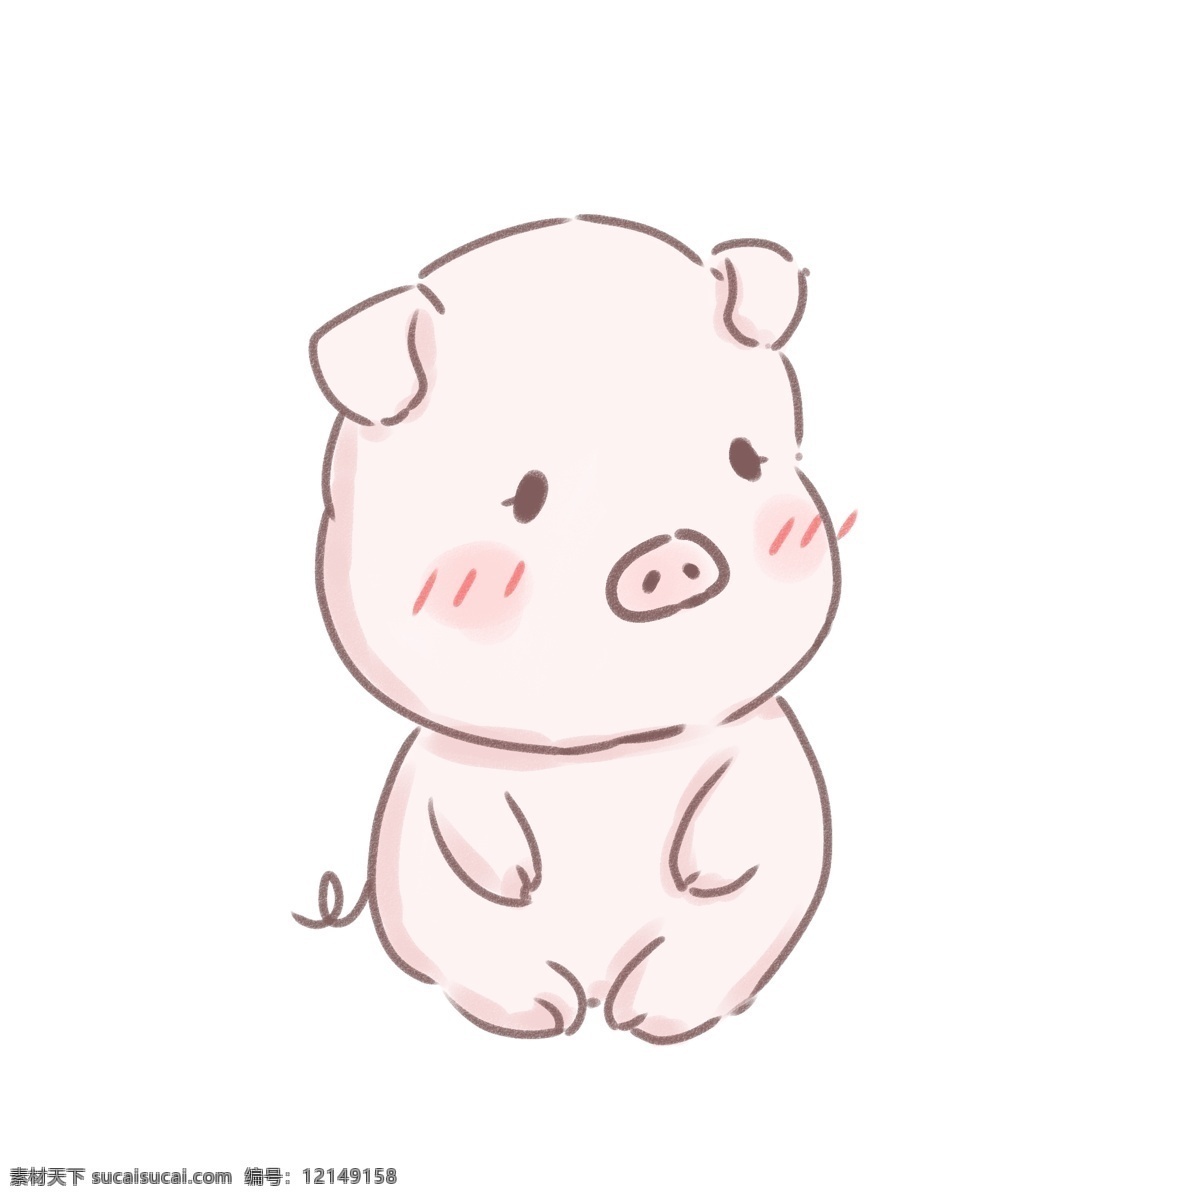 可爱 手绘 小 猪 宝宝 卡通 动漫 动物 小猪 猪年 猪宝宝 漫画 小动物 卡通形象 生肖 十二生肖